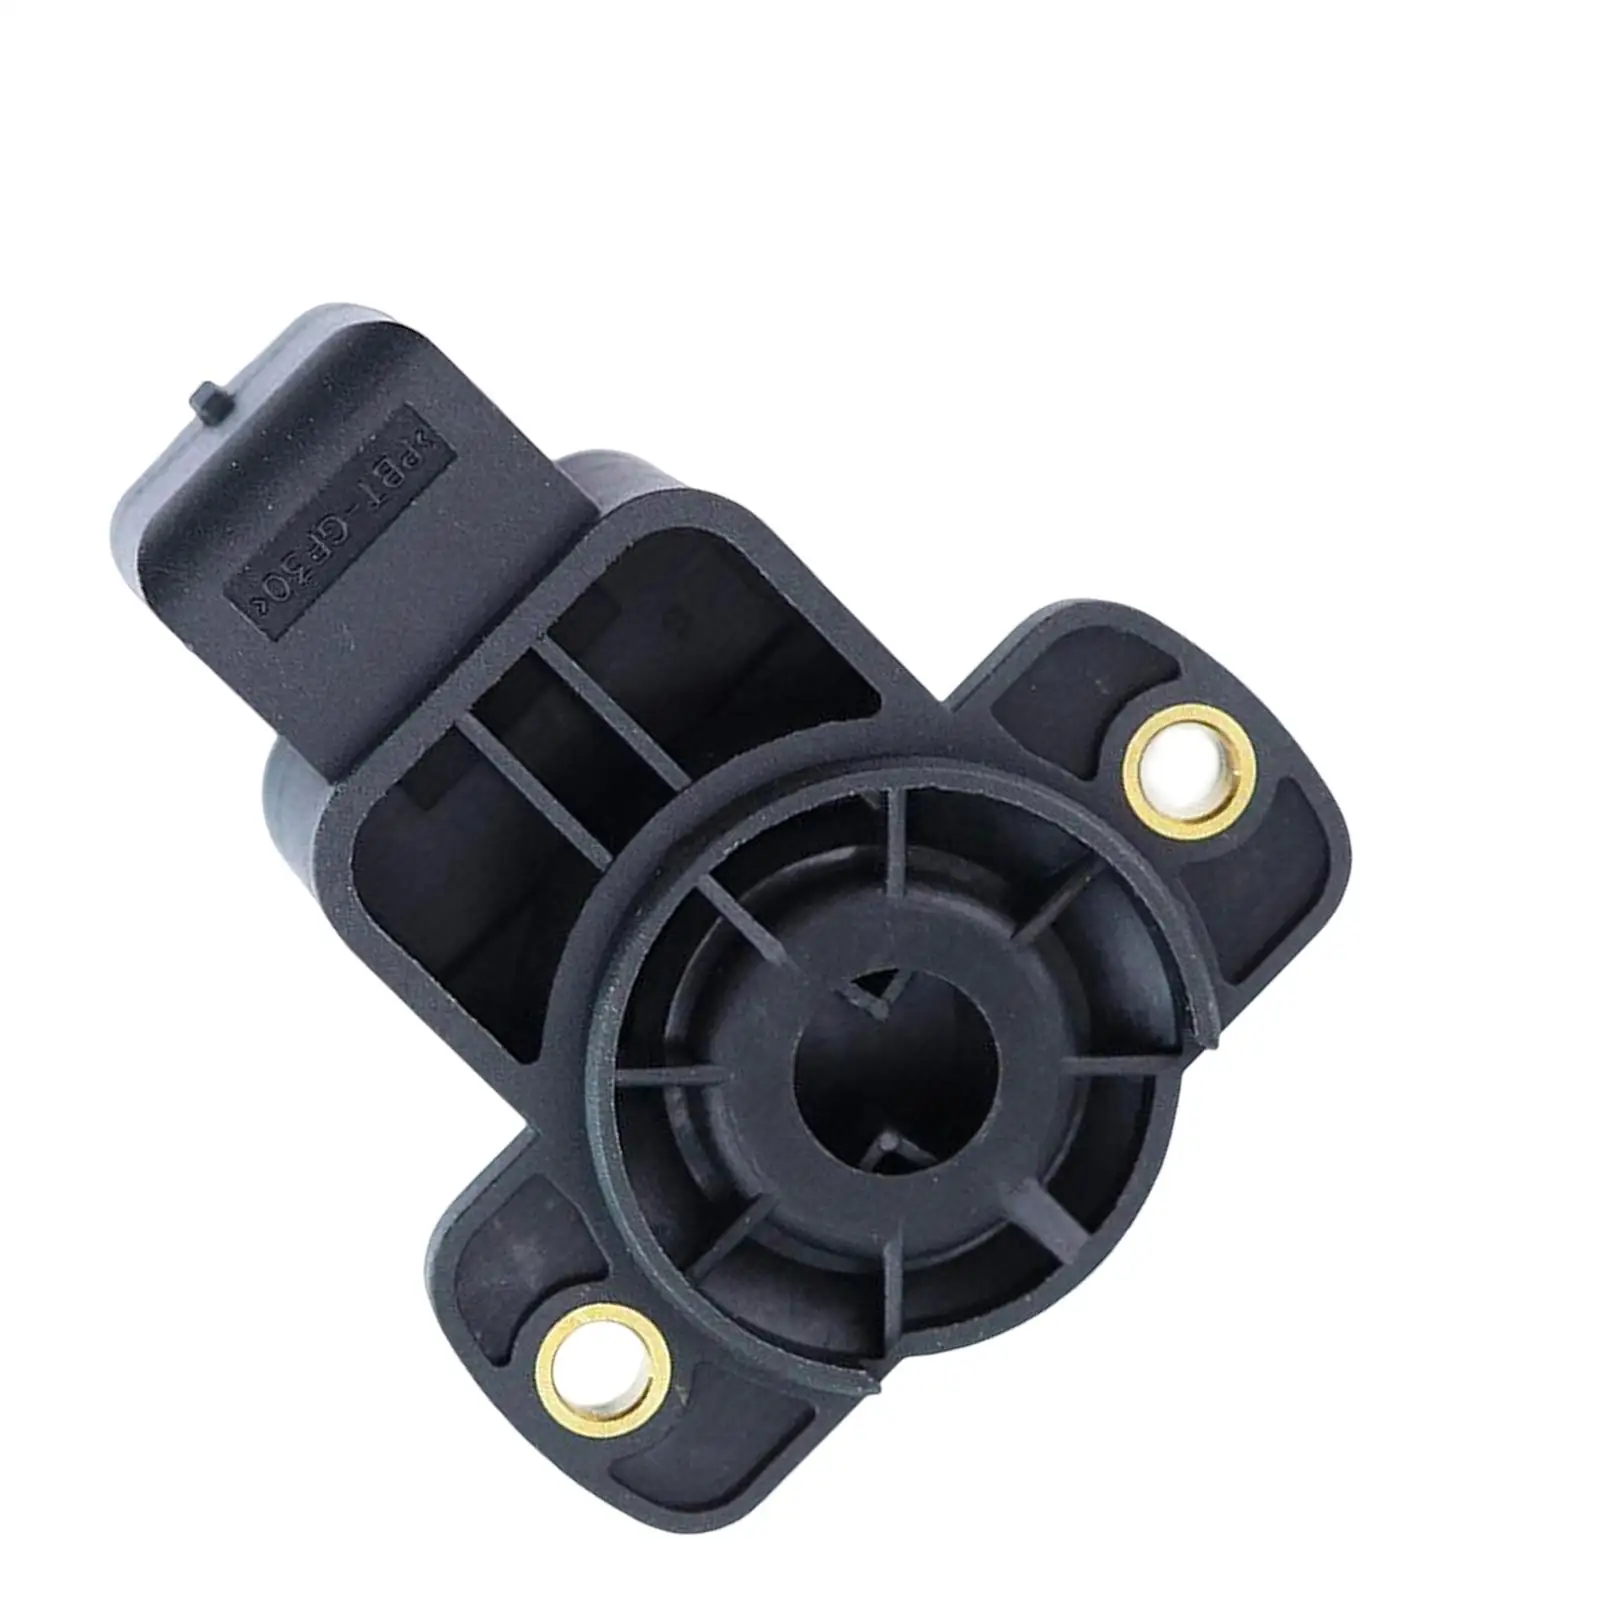 Throttle Position Sensor 9642473280 for C3 Direct Replaces Automotive